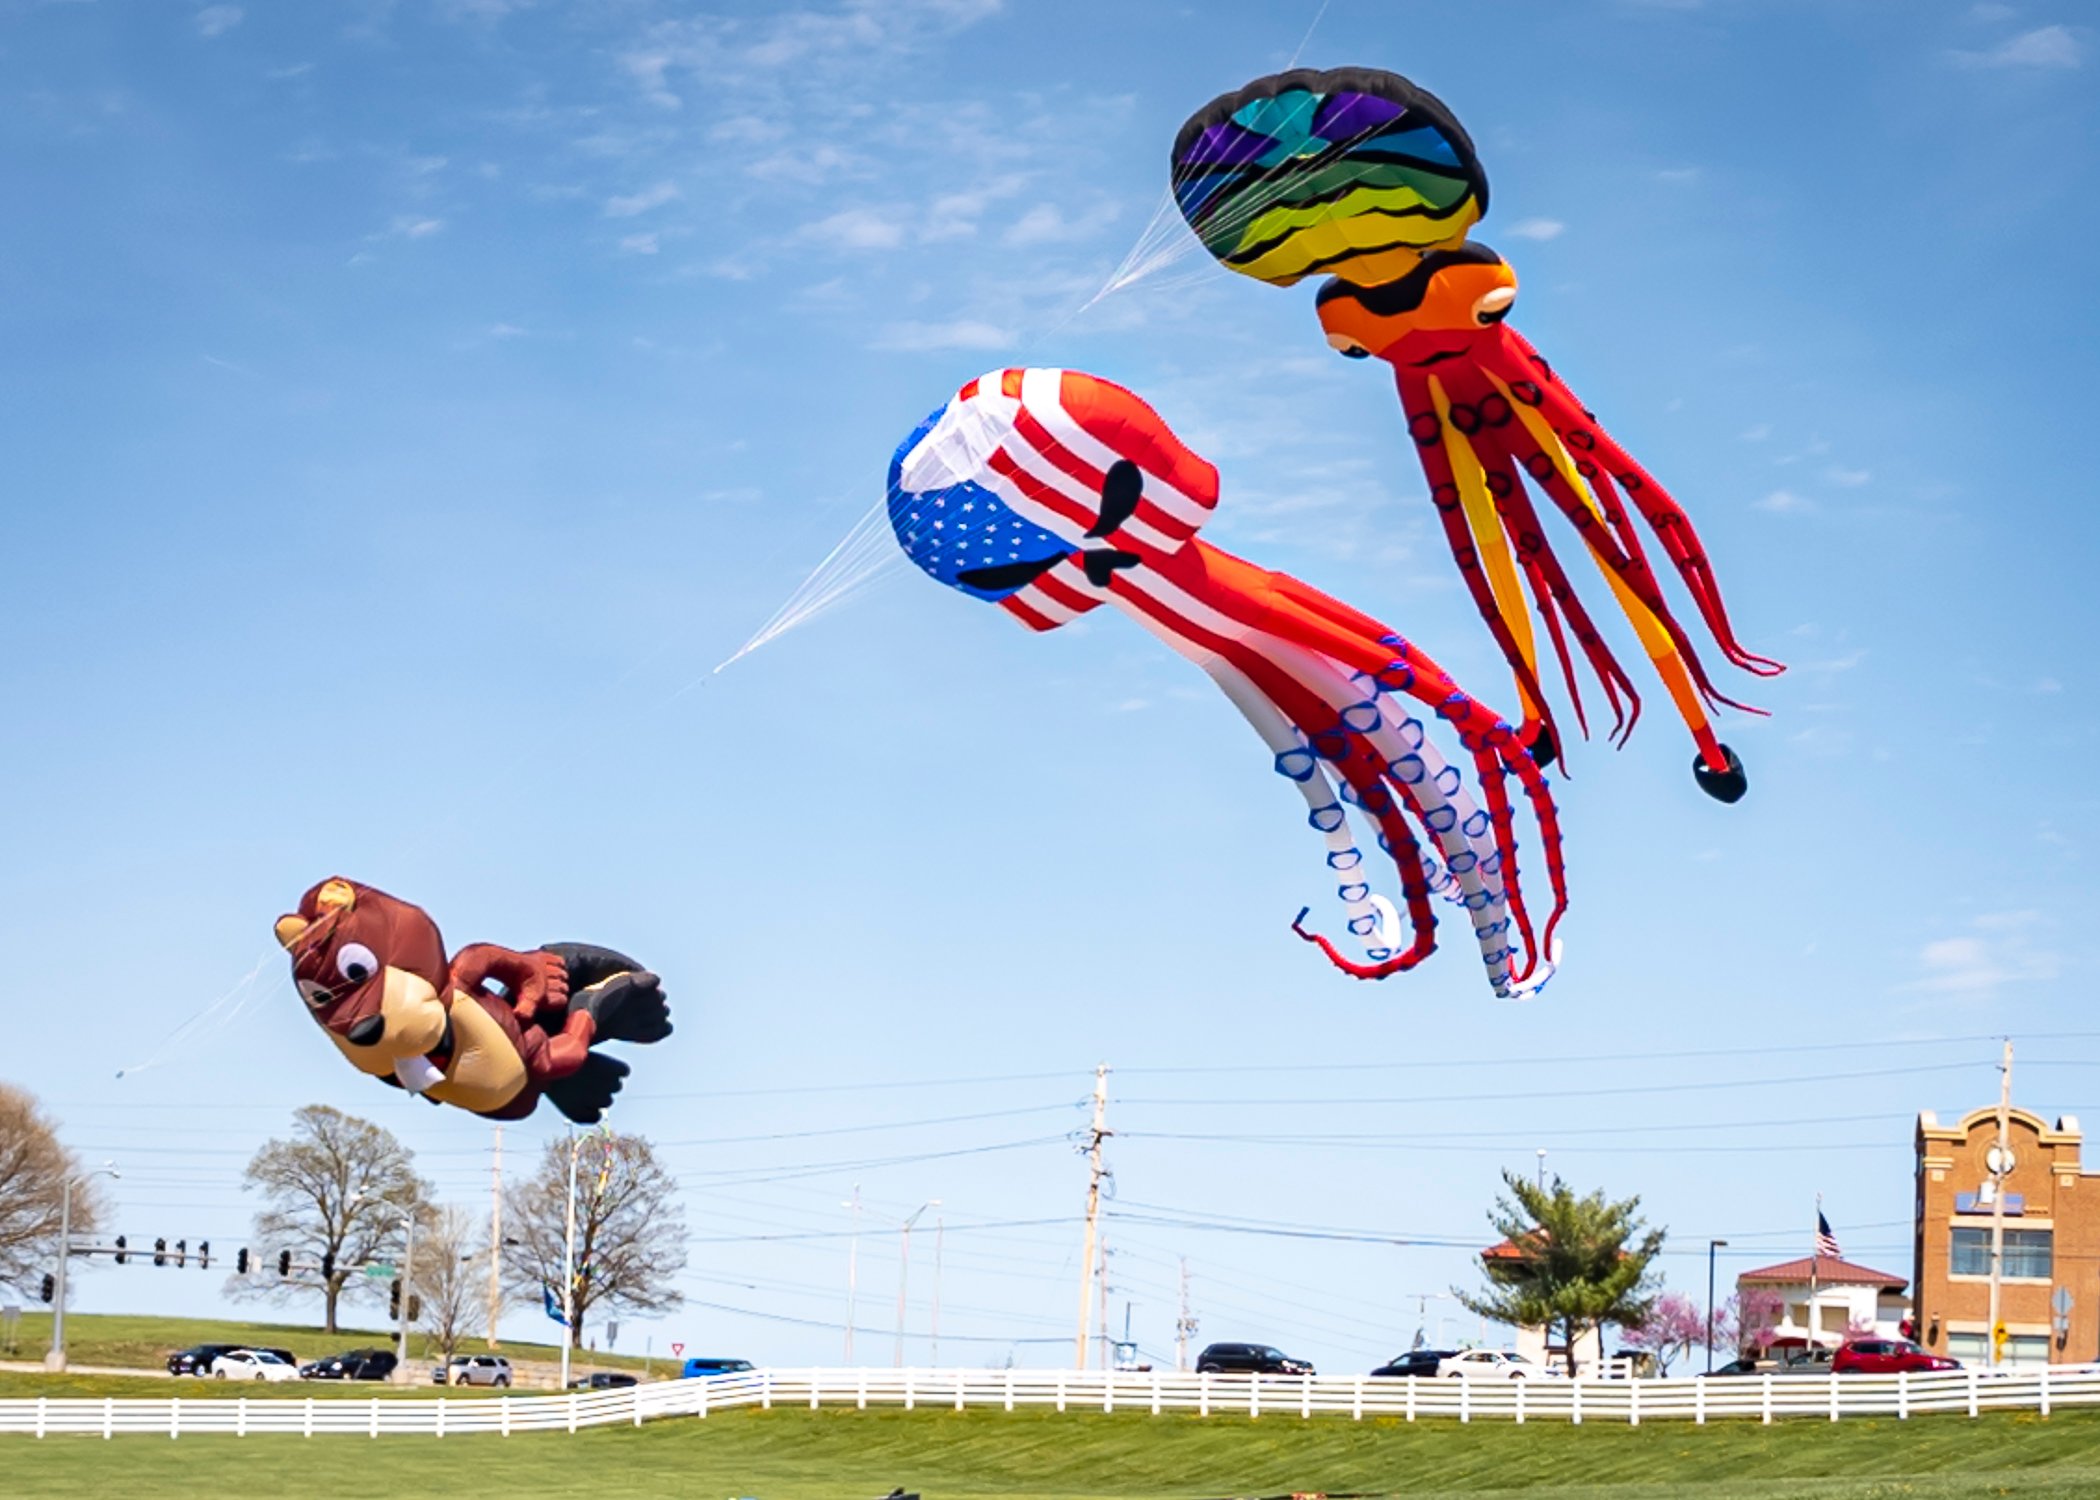 Photos Flights of Fancy Mega Kite Festival